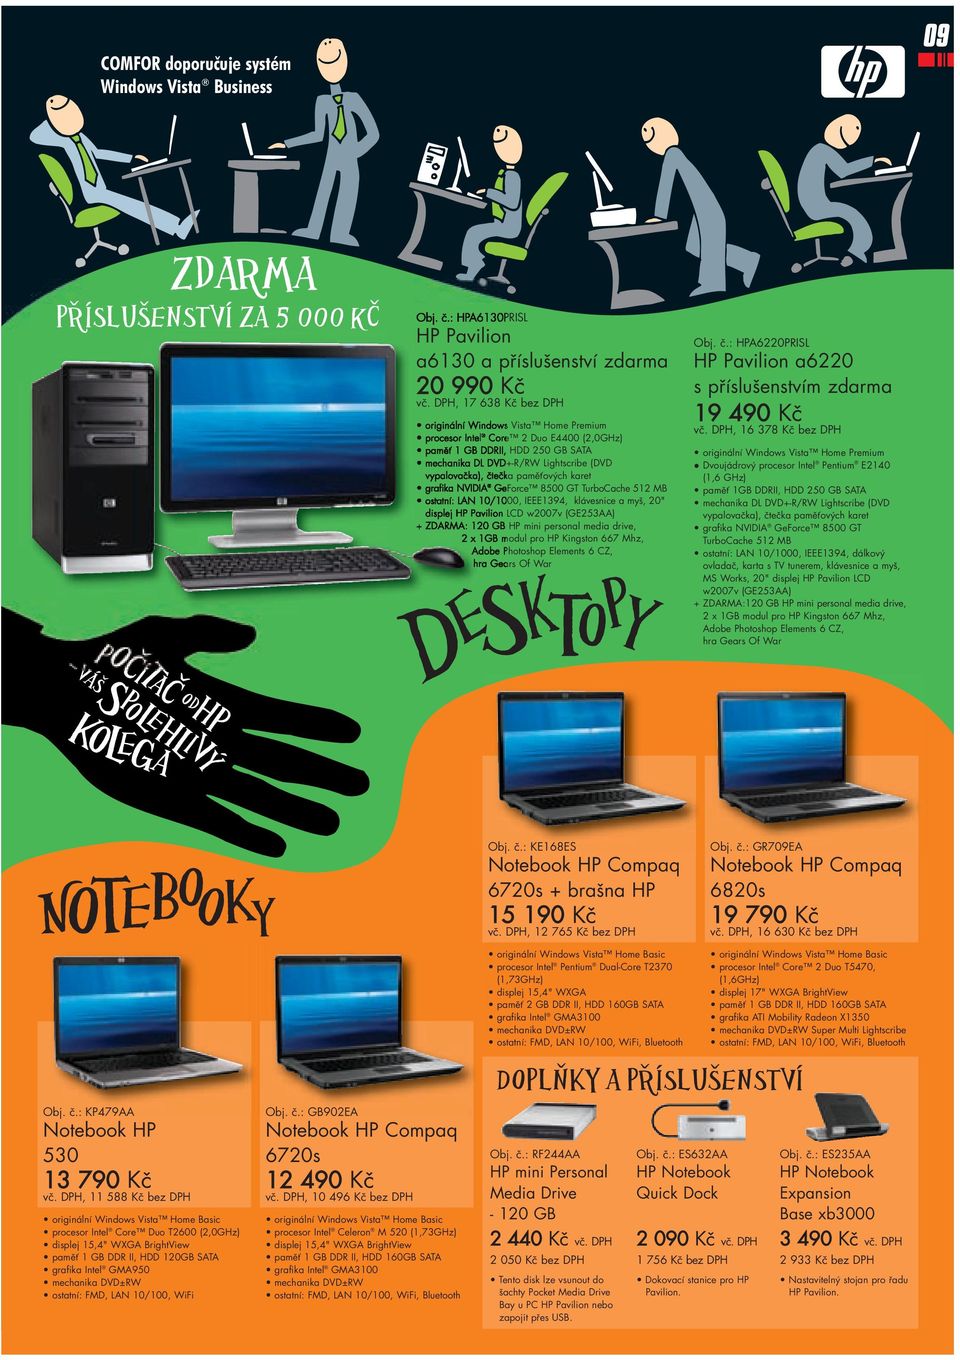 paměťových karet grafika NVIDIA GeForce 8500 GT TurboCache 512 MB ostatní: LAN 10/1000, IEEE1394, klávesnice a myš, 20" displej HP Pavilion LCD w2007v (GE253AA) + ZDARMA: 120 GB HP mini personal